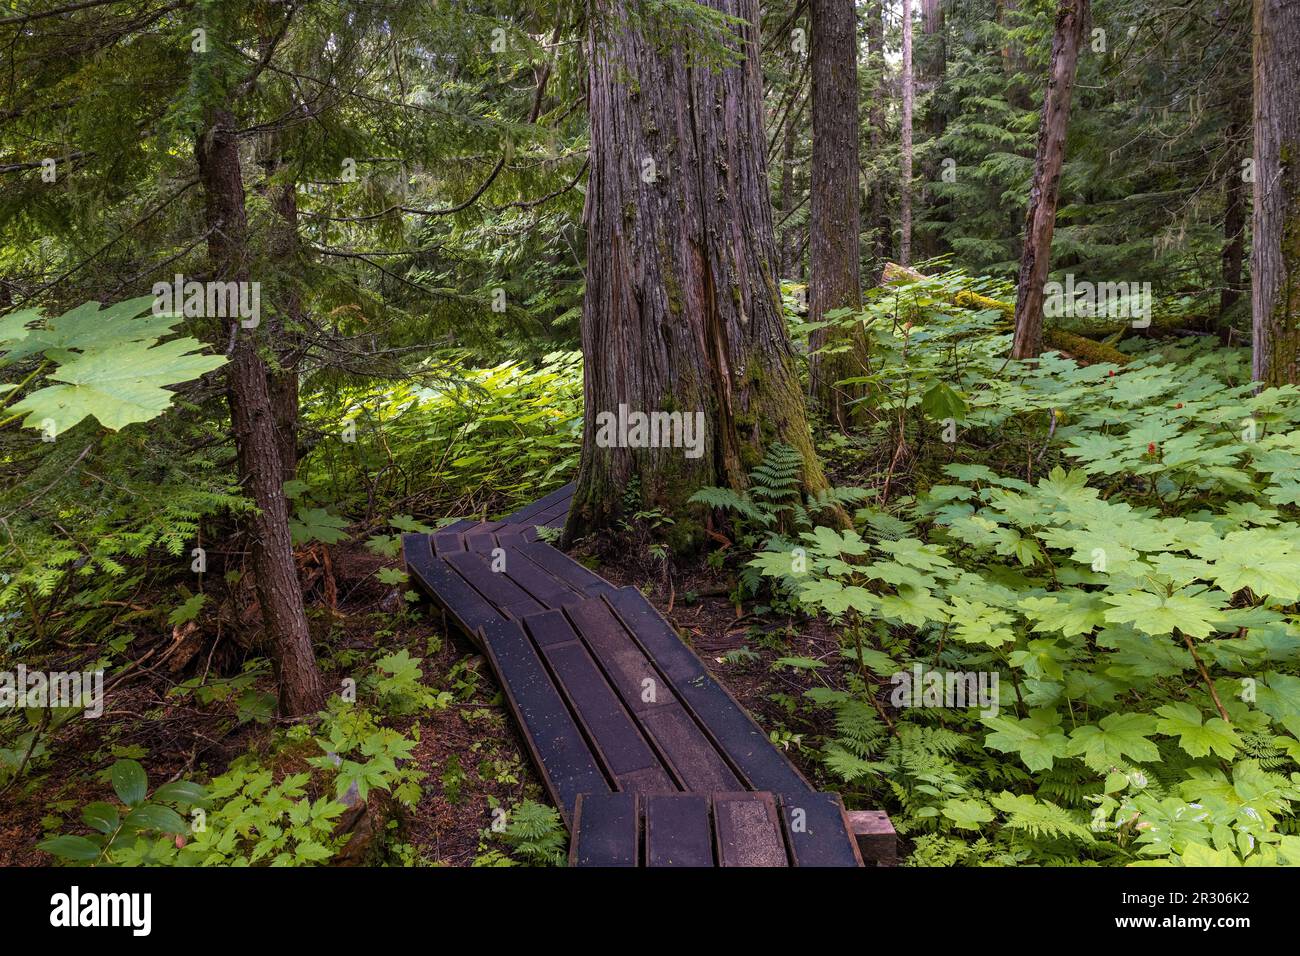 Forêt de cèdre rouge de l’Ouest (Thuja plicatain) et sentier de randonnée dans le parc provincial de la Forêt antique de Chun T’oh Whudujut, Colombie-Britannique, Canada. Banque D'Images